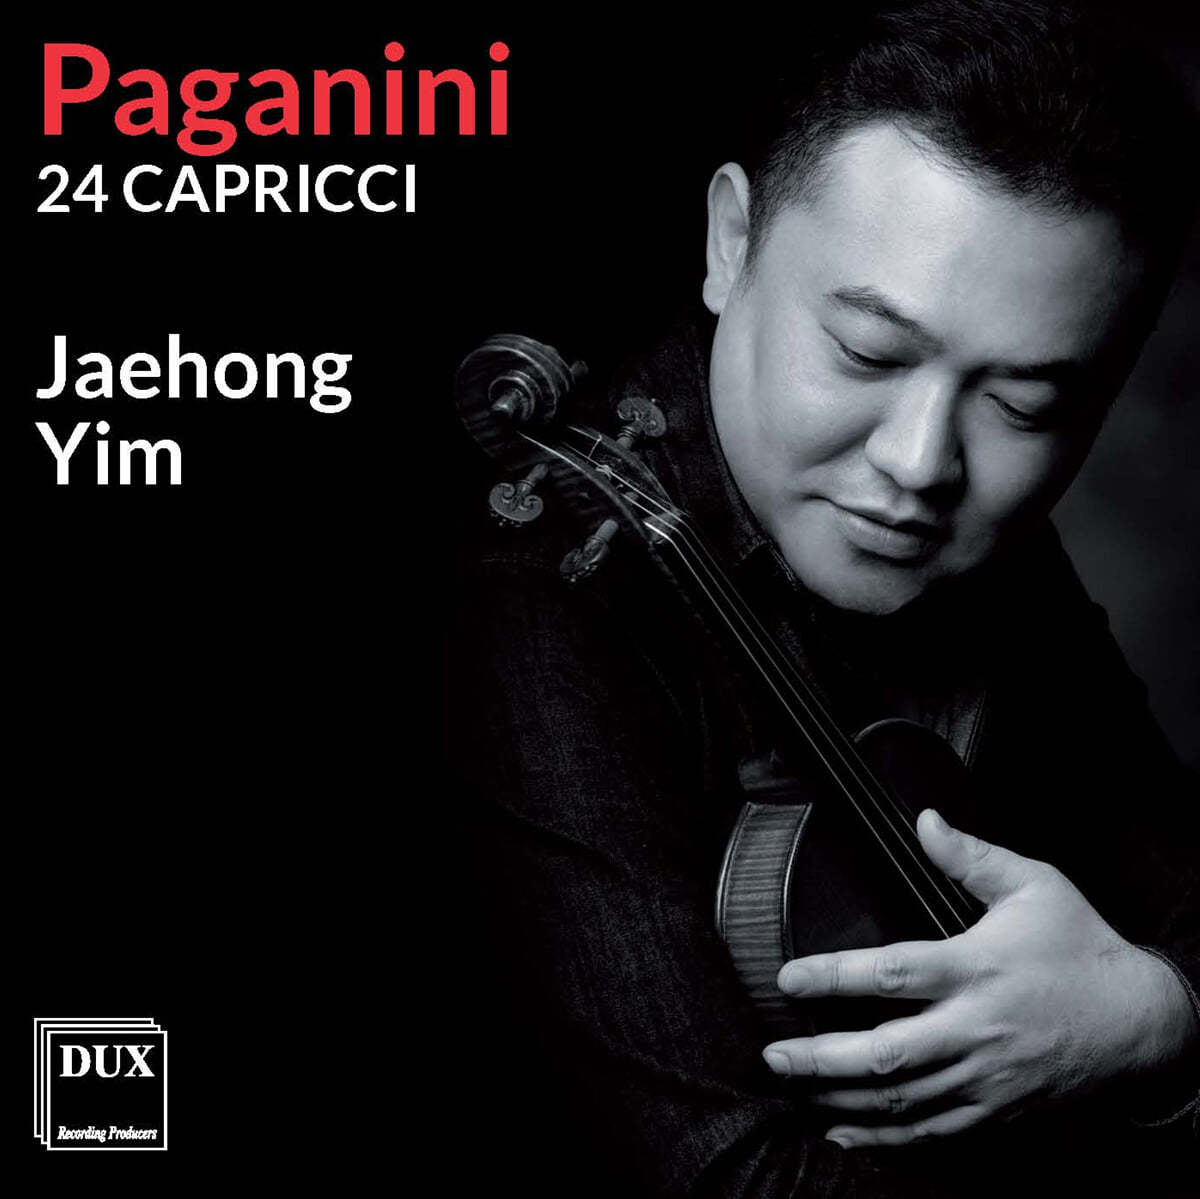 임재홍 - 파가니니: 카프리스 24곡 전곡 (Paganini: 24 Caprices for Solo Violin Op. 1) 